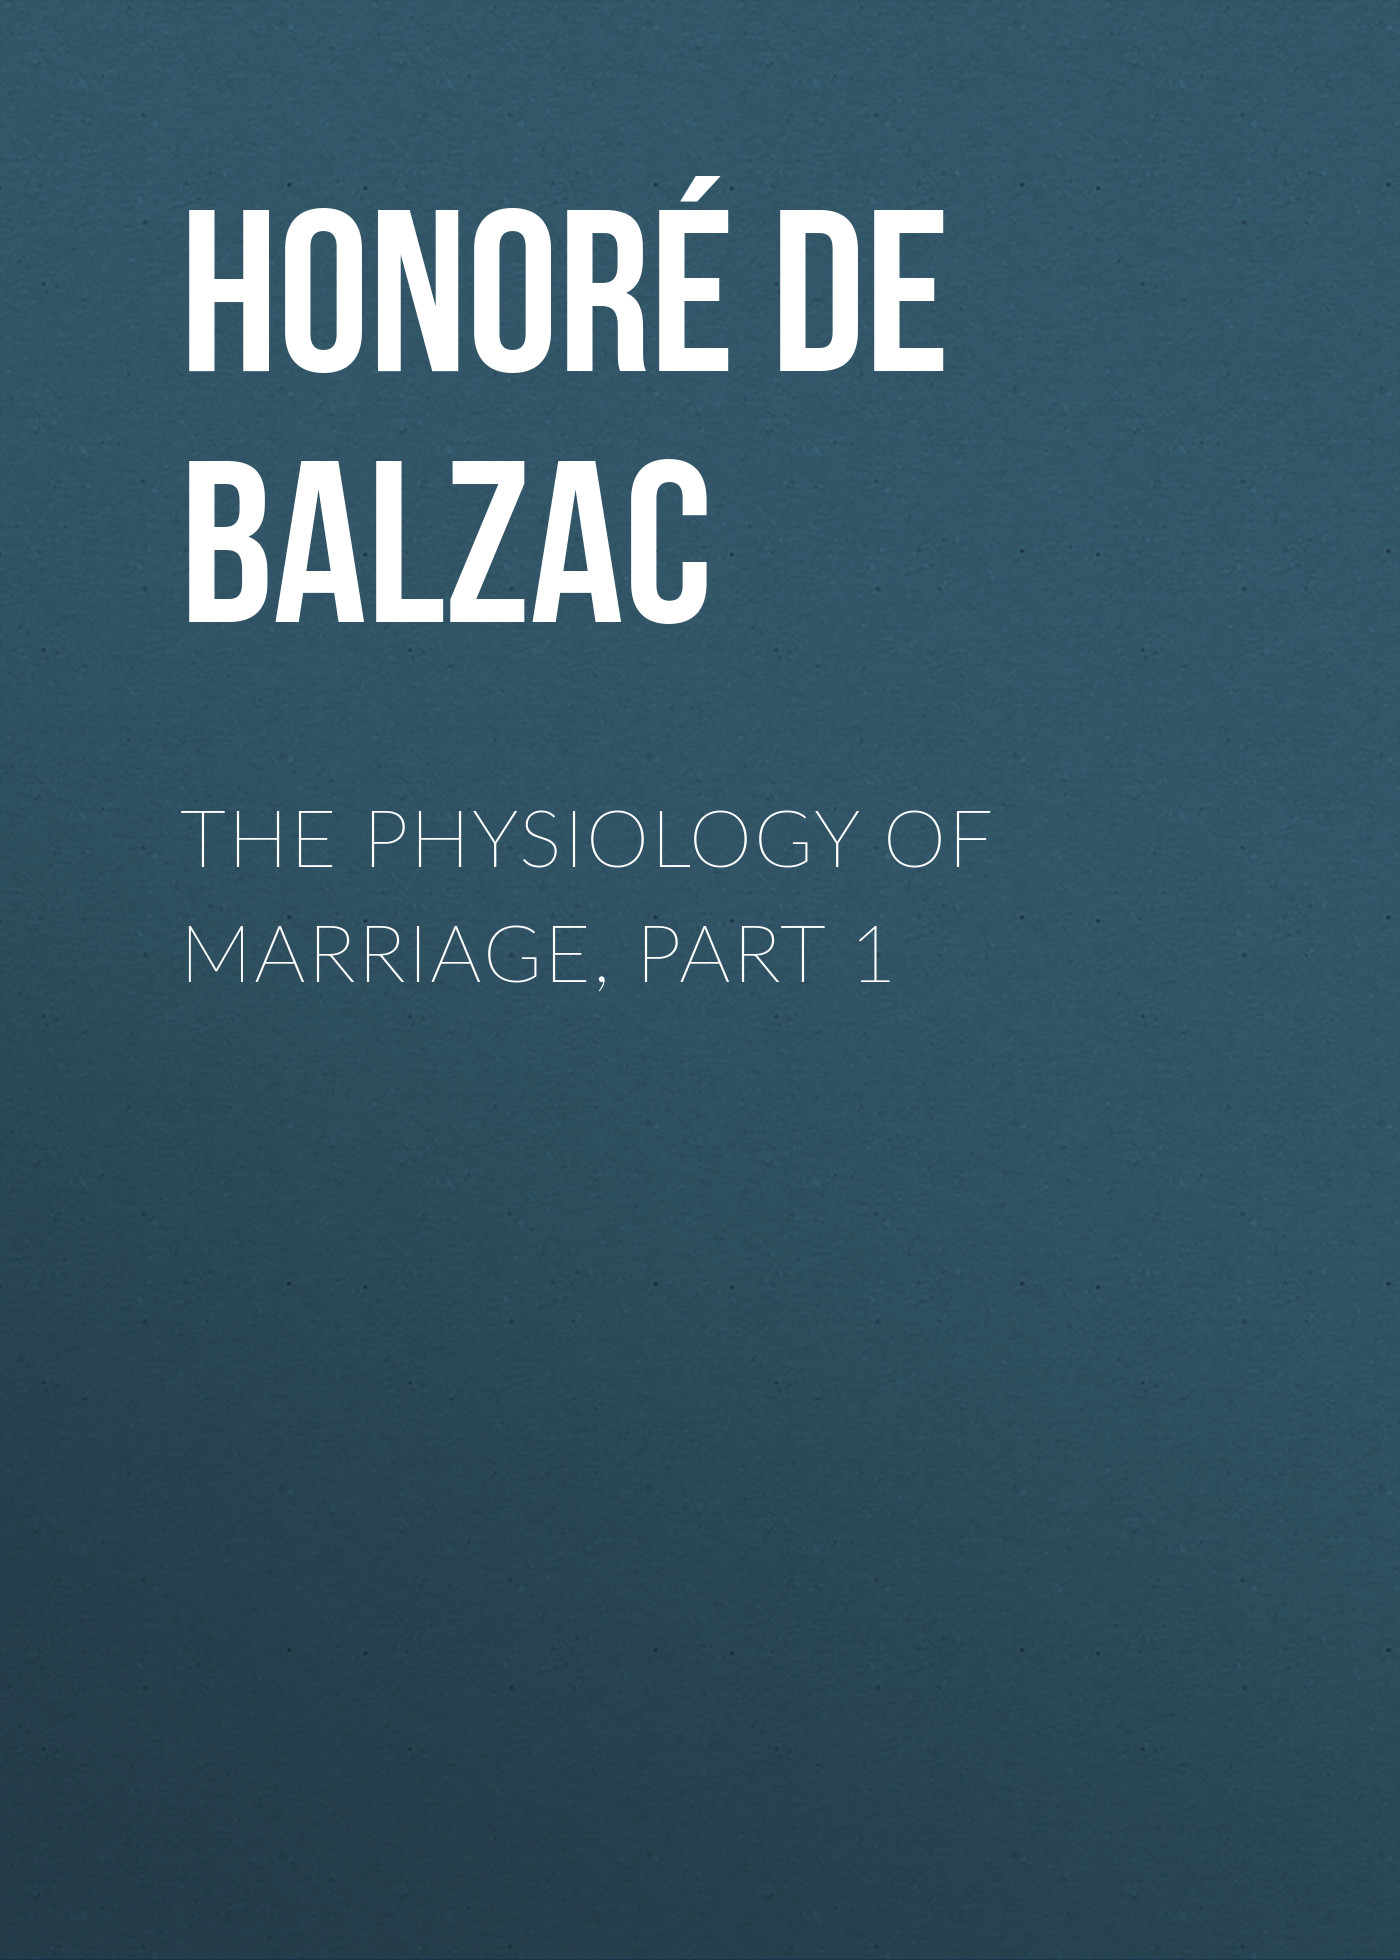 Книга The Physiology of Marriage, Part 1  из серии , созданная Honoré Balzac, может относится к жанру Литература 19 века, Зарубежная старинная литература, Зарубежная классика. Стоимость электронной книги The Physiology of Marriage, Part 1  с идентификатором 25021275 составляет 0 руб.